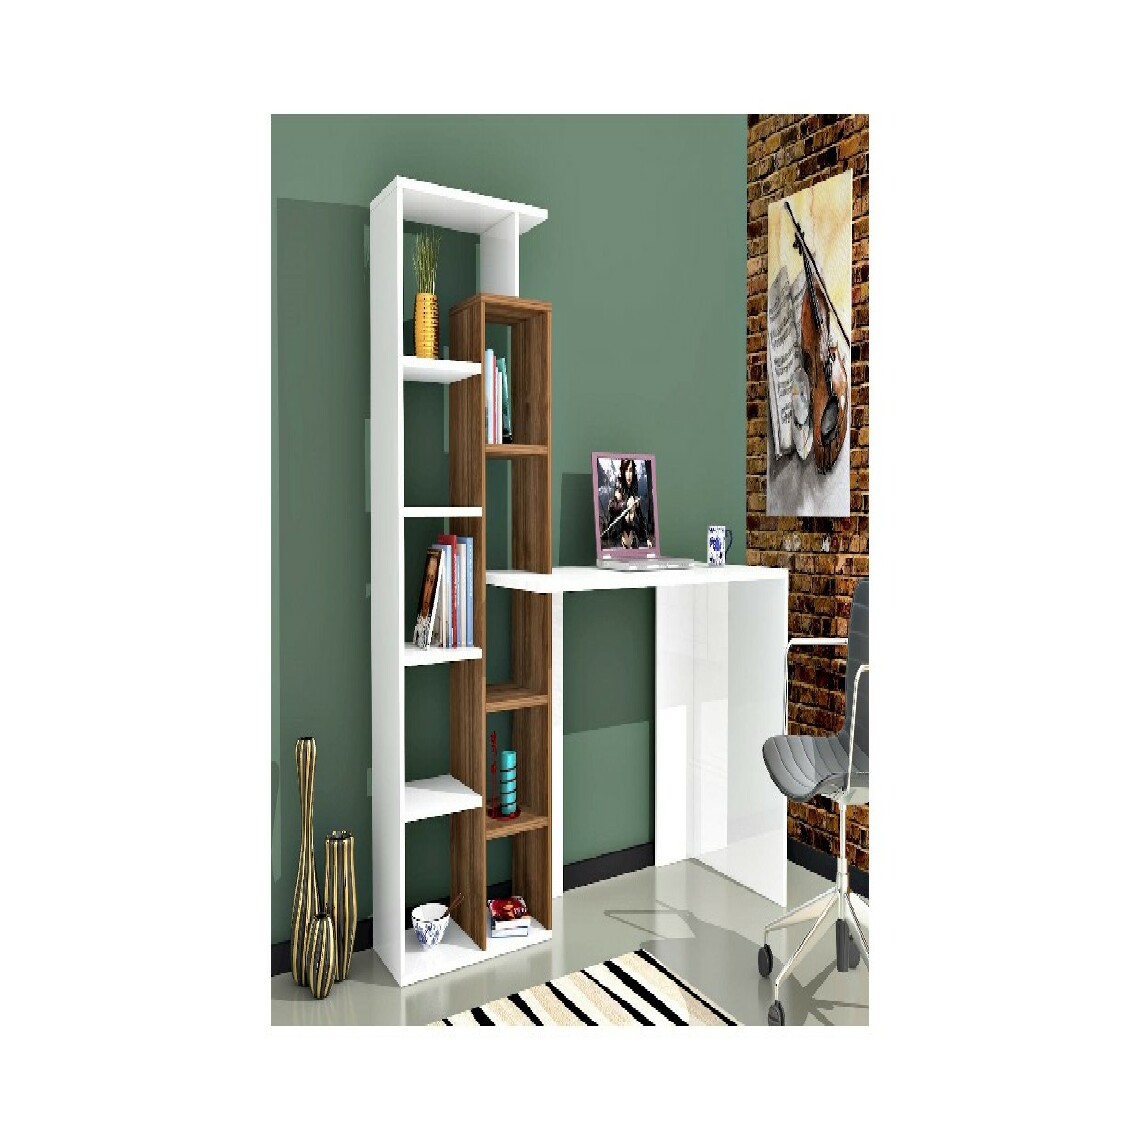 Homemania - HOMEMANIA Poly Bureau - avec bibliothèque intégrée - avec étagères - Studio, chambre à coucher, bureau - Blanc, Noyer en Bois, 162 x 60 x 148 cm - Rangements à chaussures